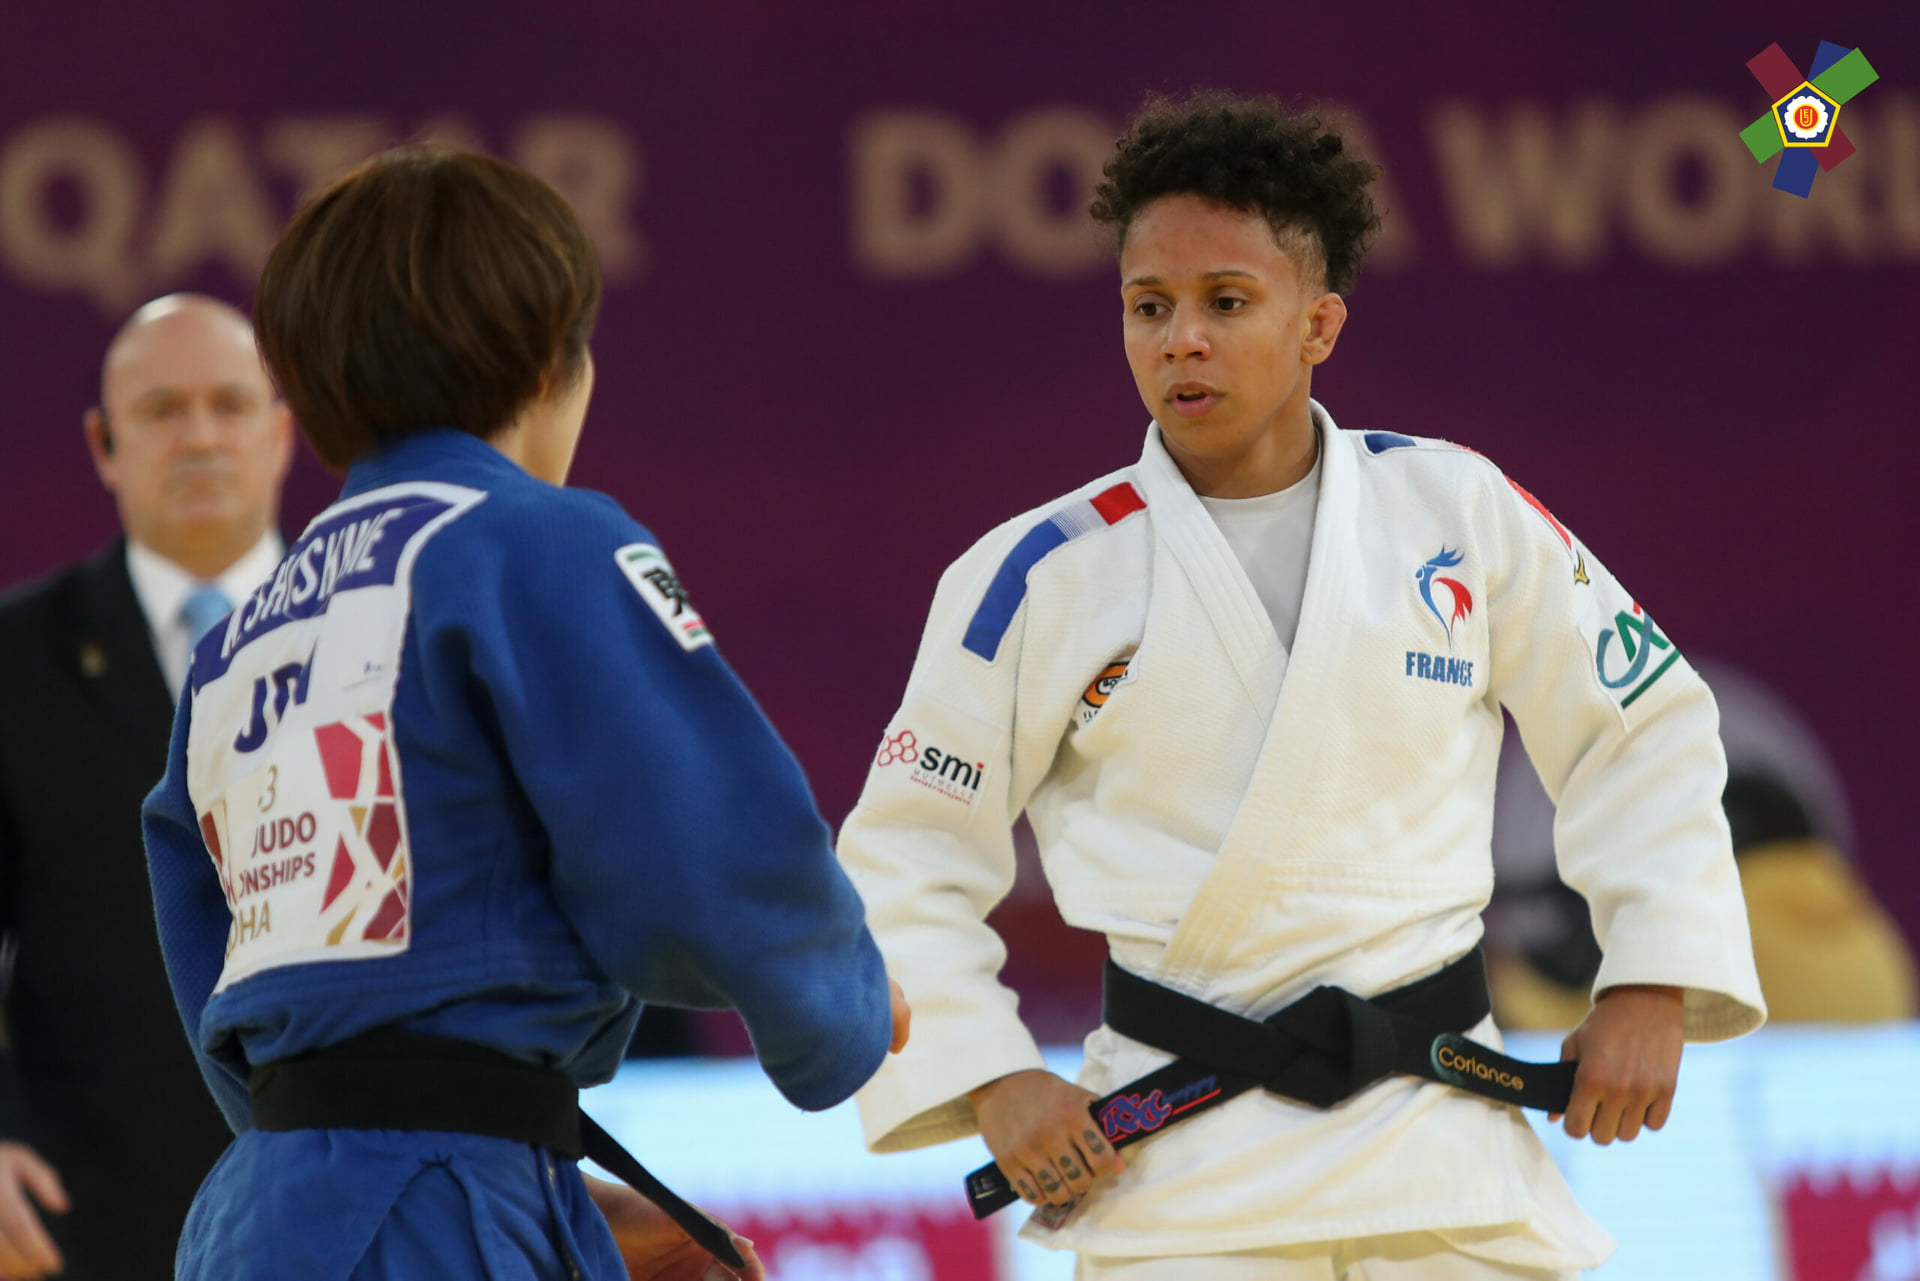     La judokate martiniquaise Amandine Buchard sélectionnée pour les J.O. de Tokyo

